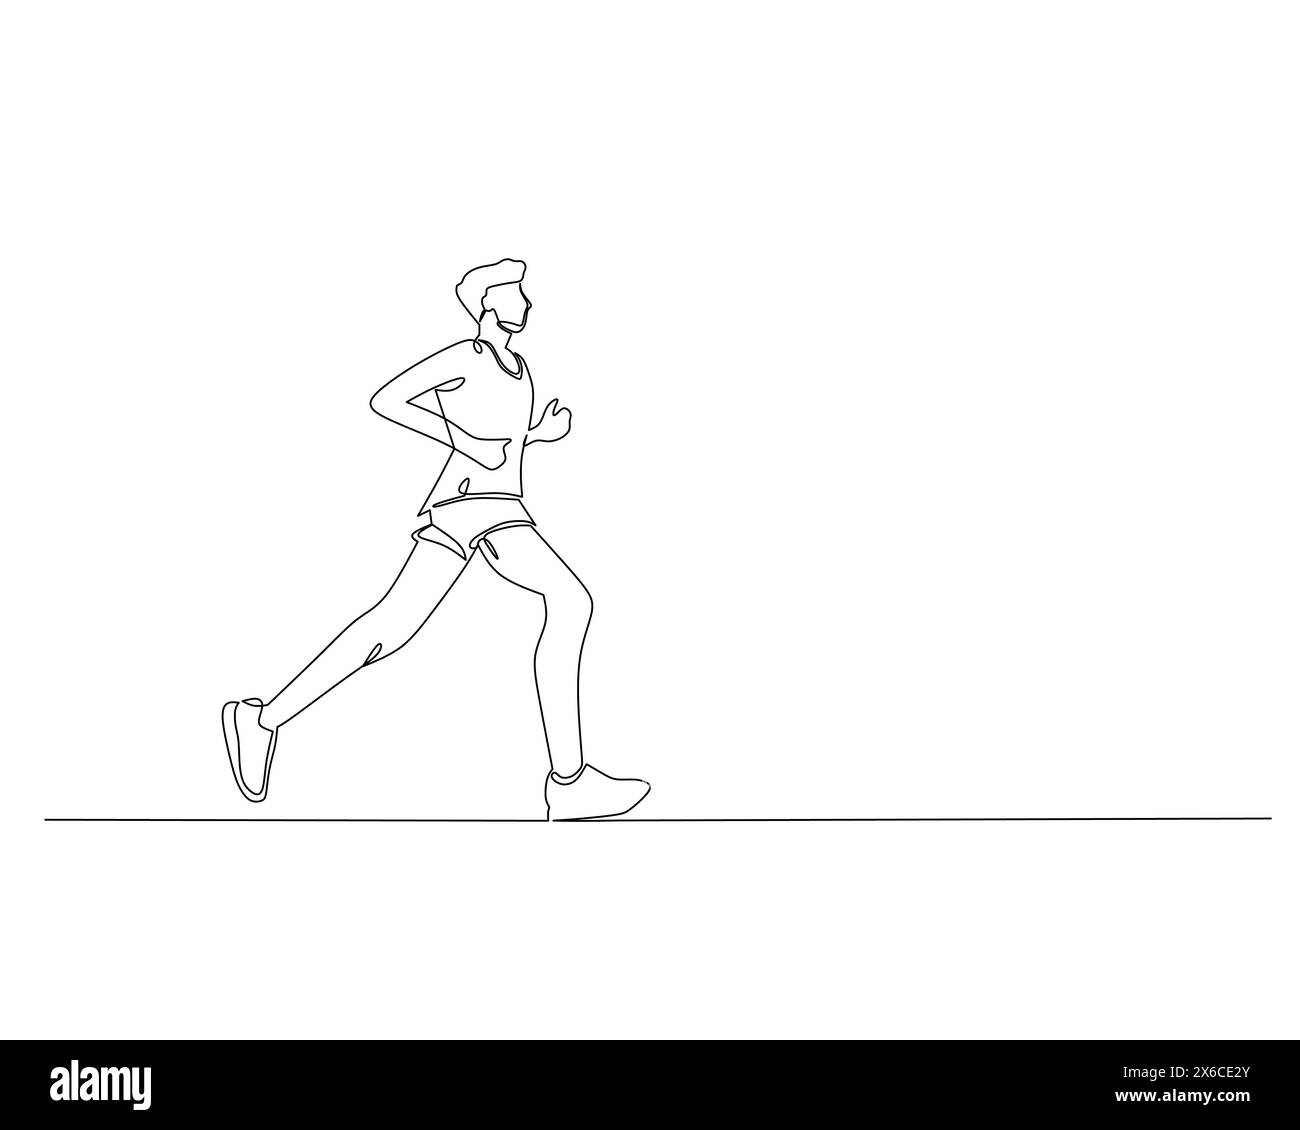 Durchgehende Einzeilenzeichnung der Seitenansicht eines jungen Mannes, der auf sicherer Strecke läuft. Gesundes Sporttrainingskonzept. Illustration des Konstruktionsvektors Stock Vektor